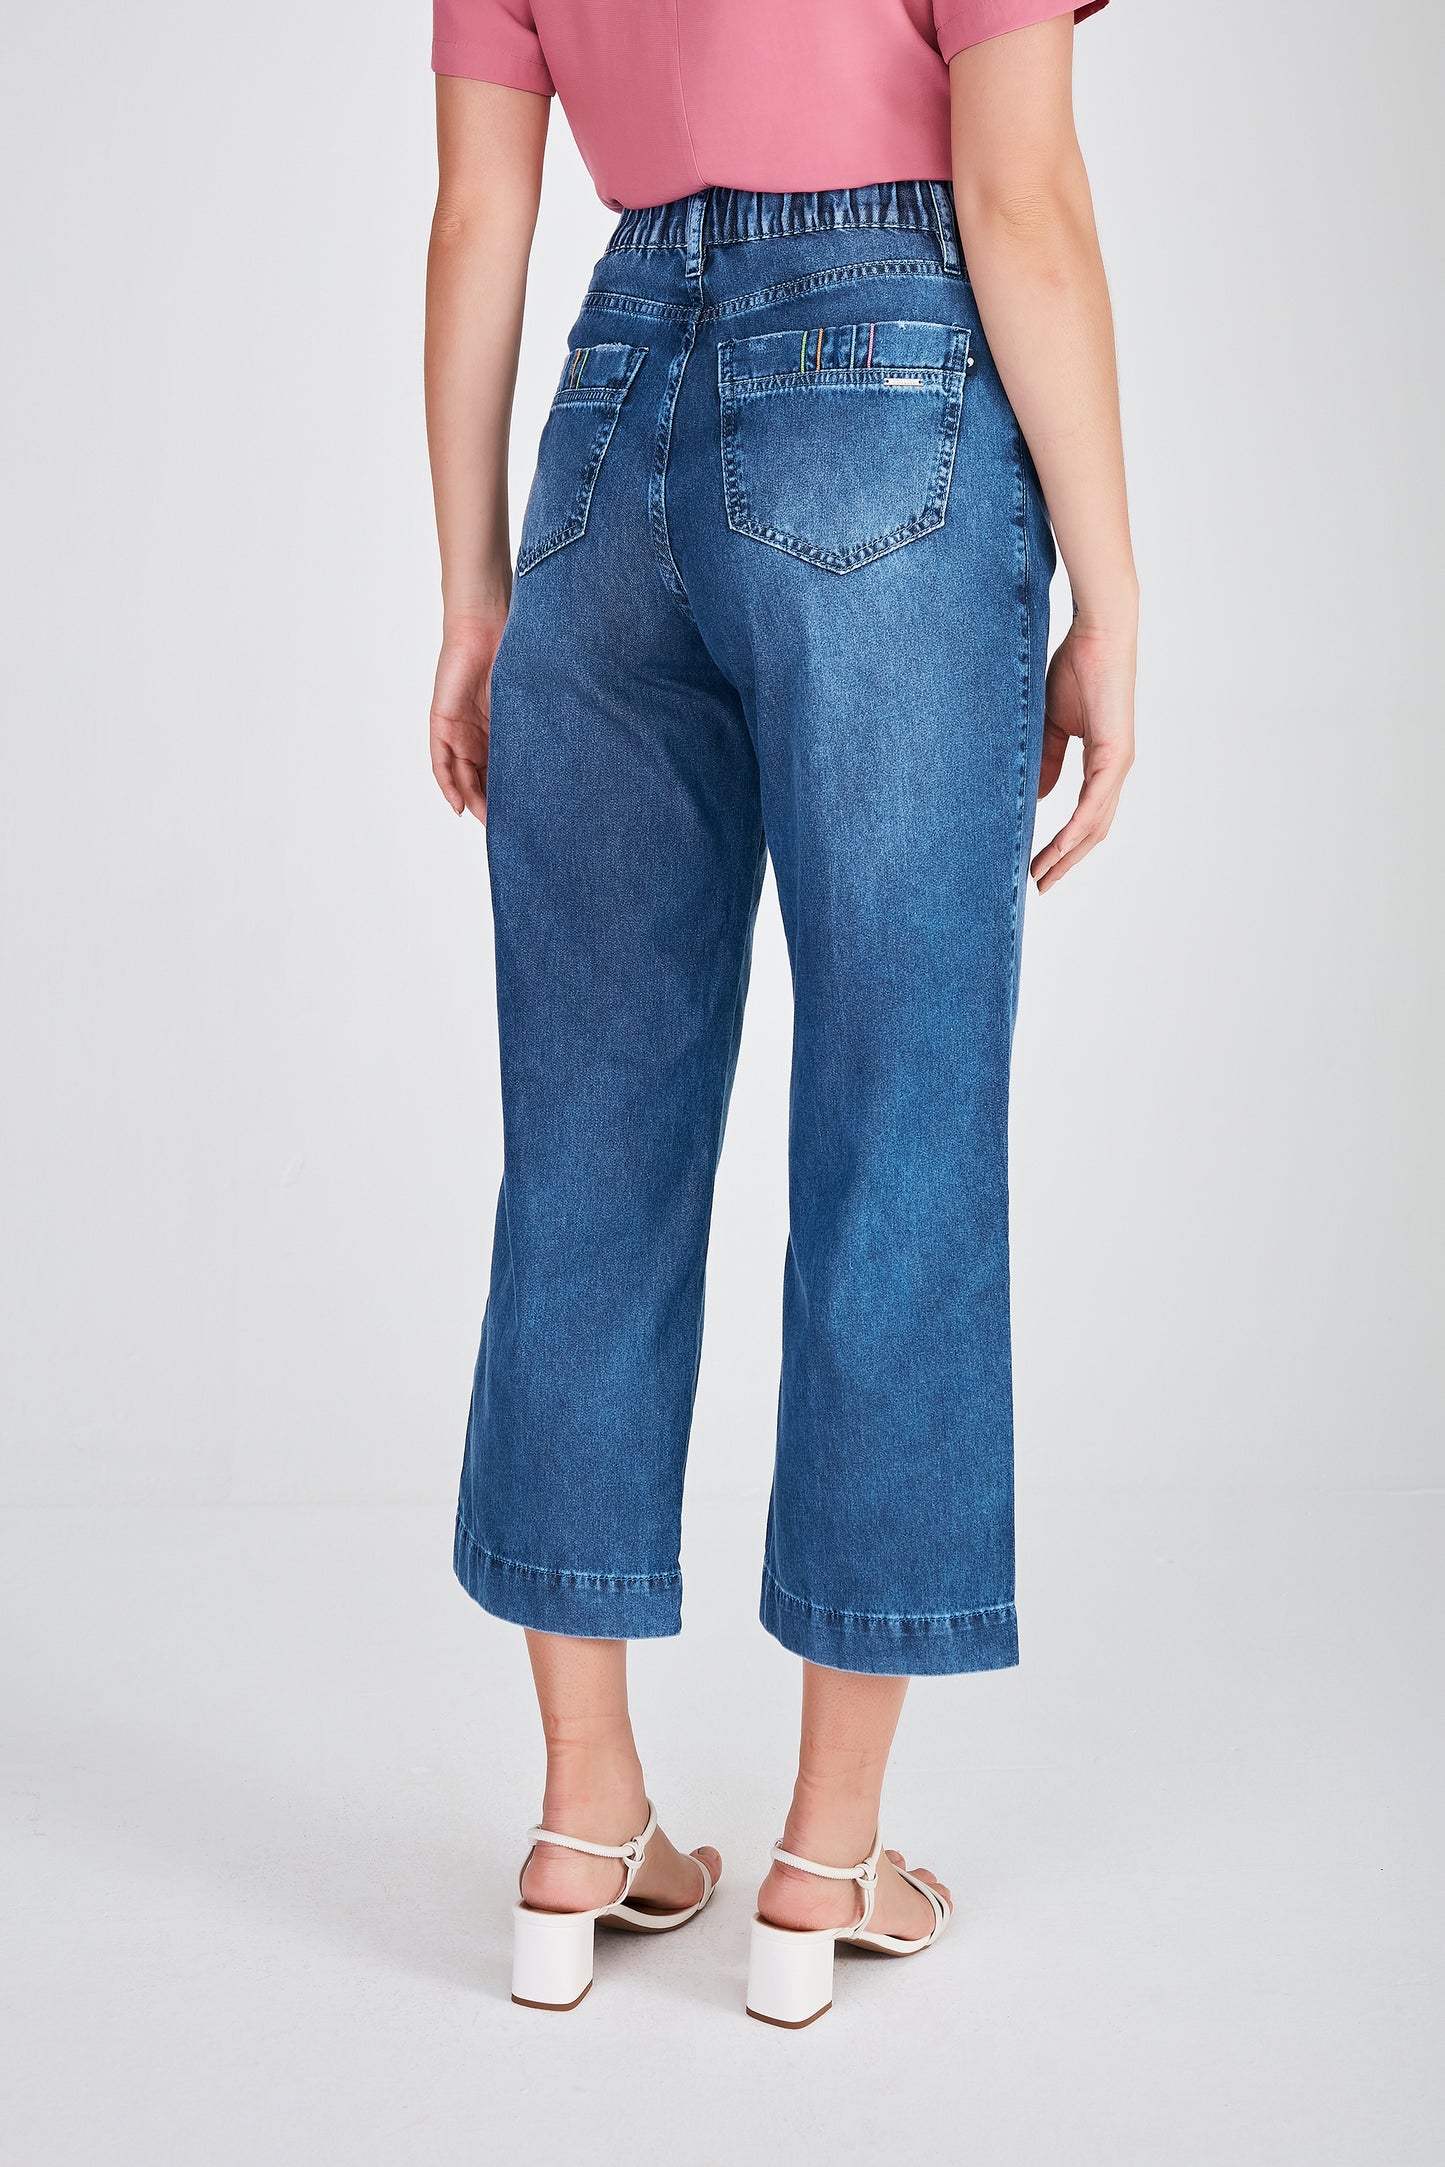 calça jeans pantacourt cintura intermediária com bordado pesponto